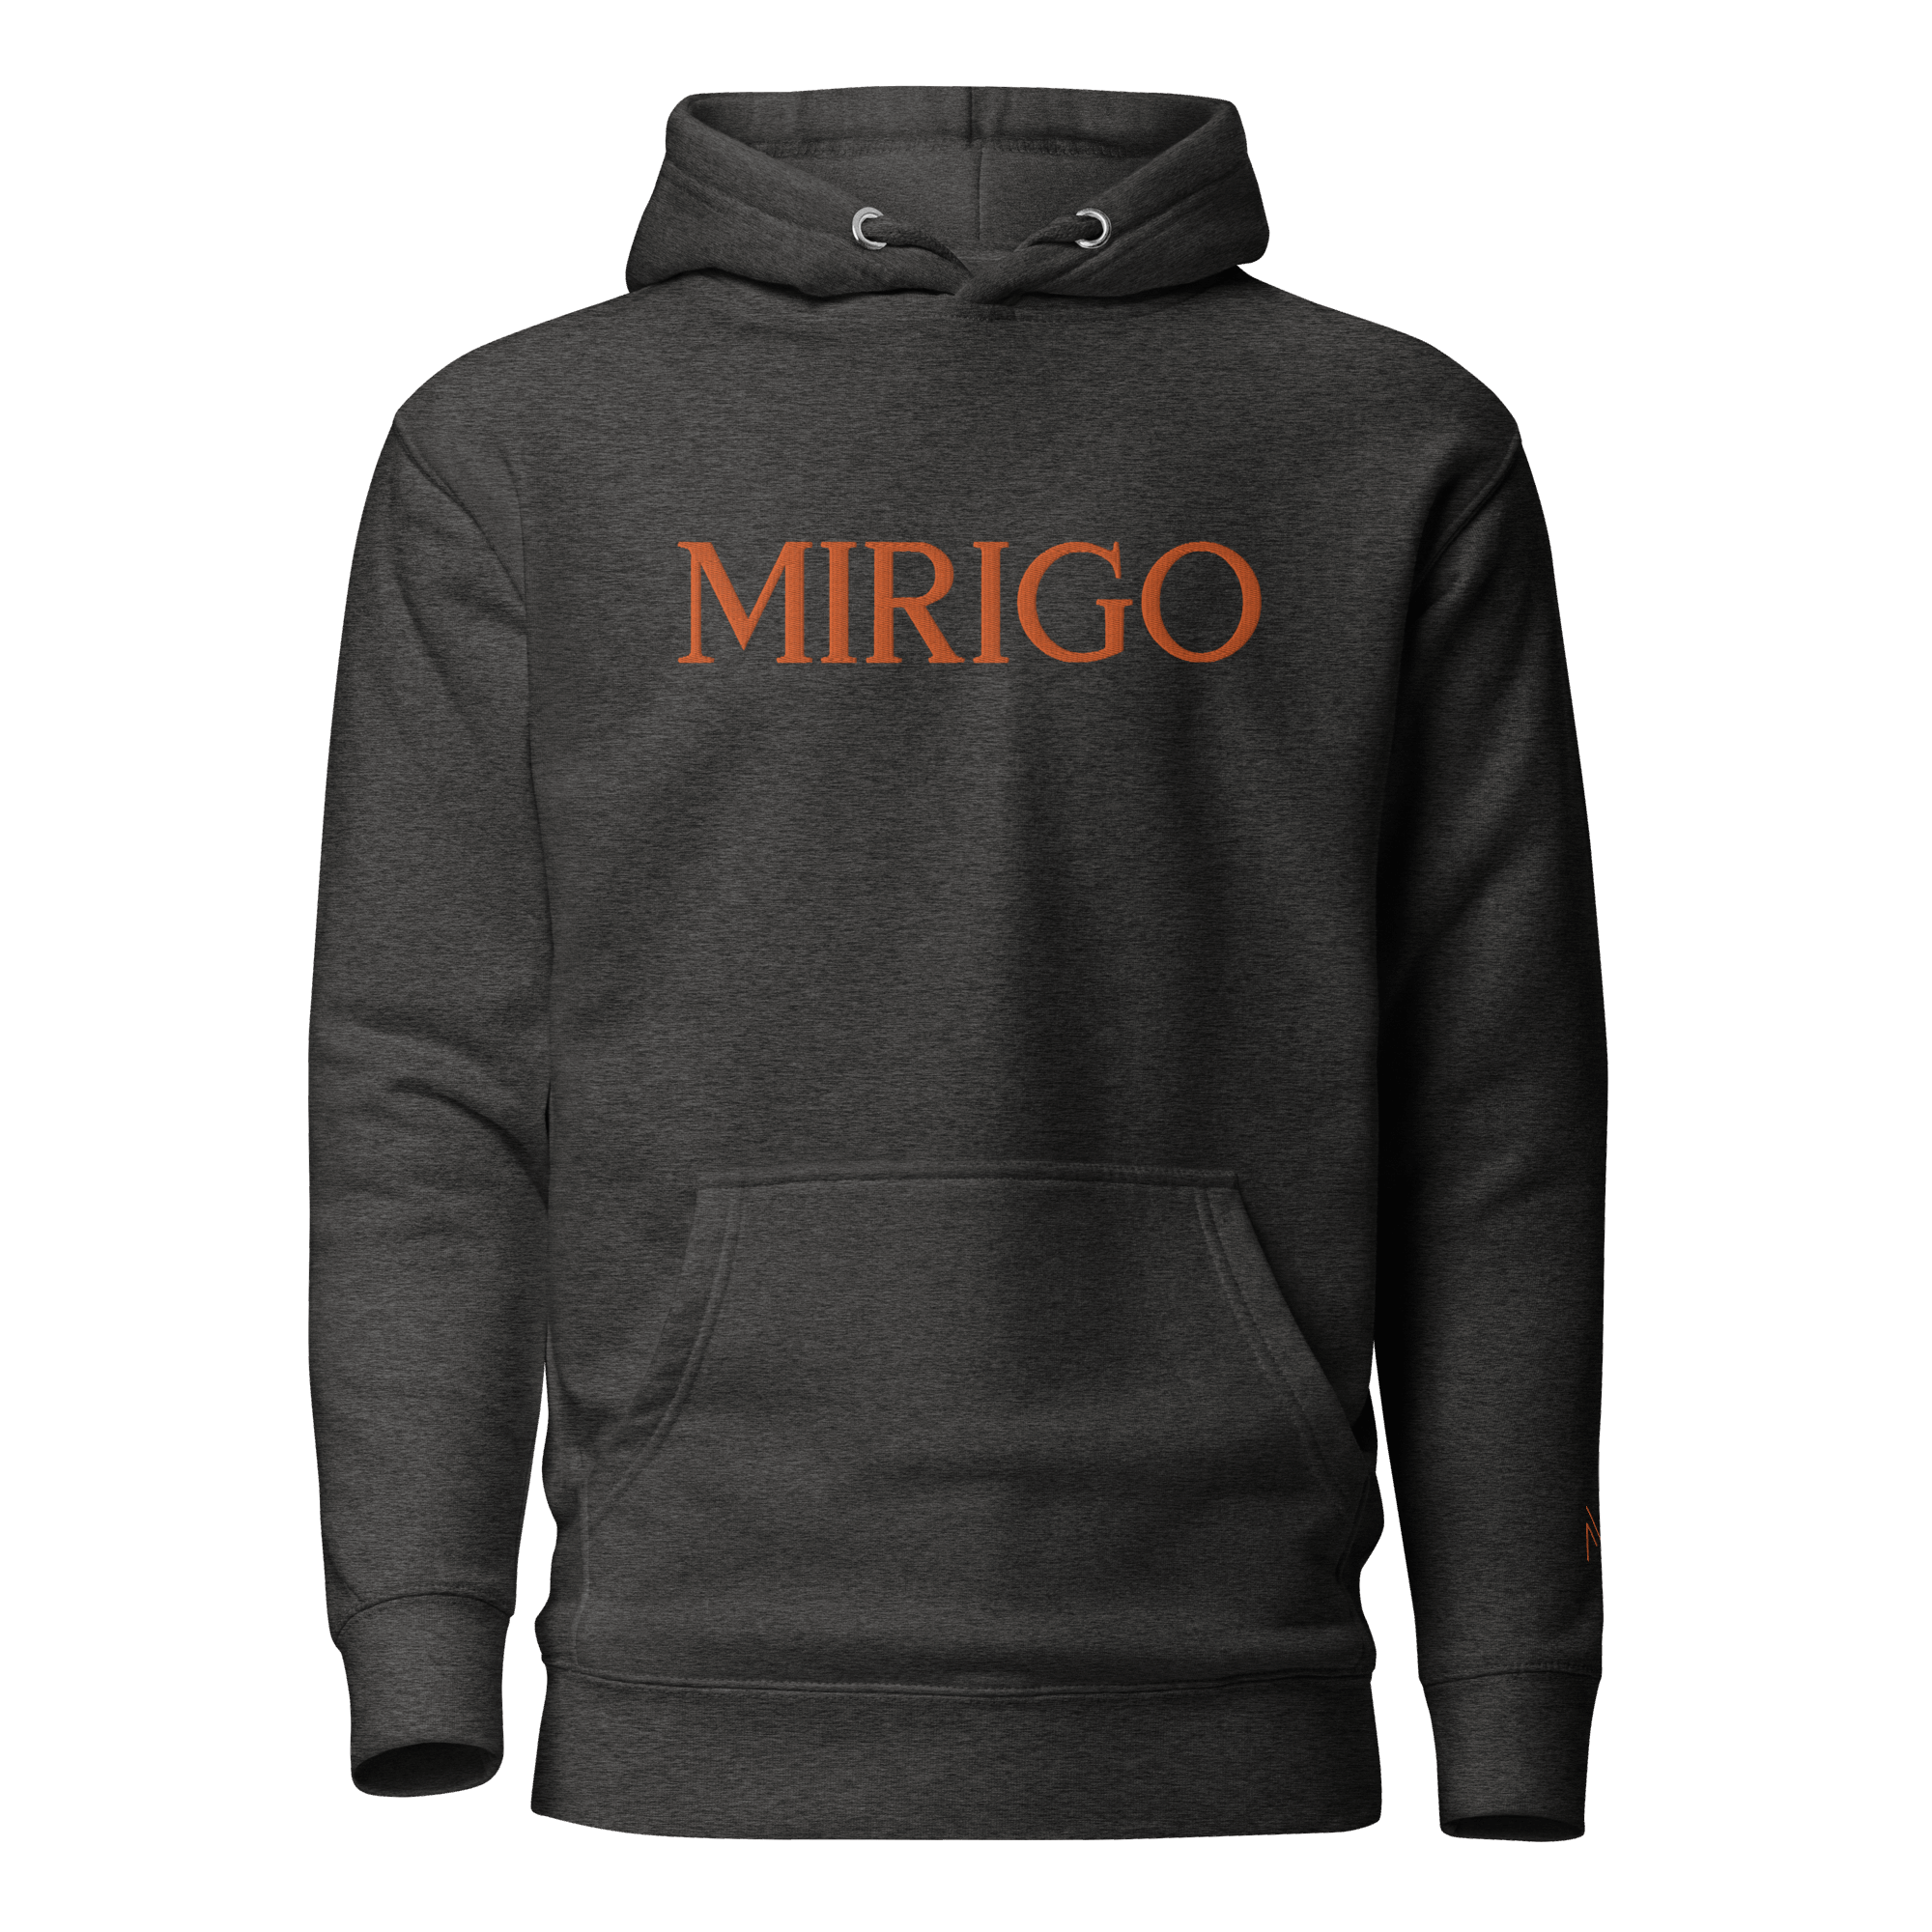 Men Hoodie - Mirigo gray/orange - Mirigo